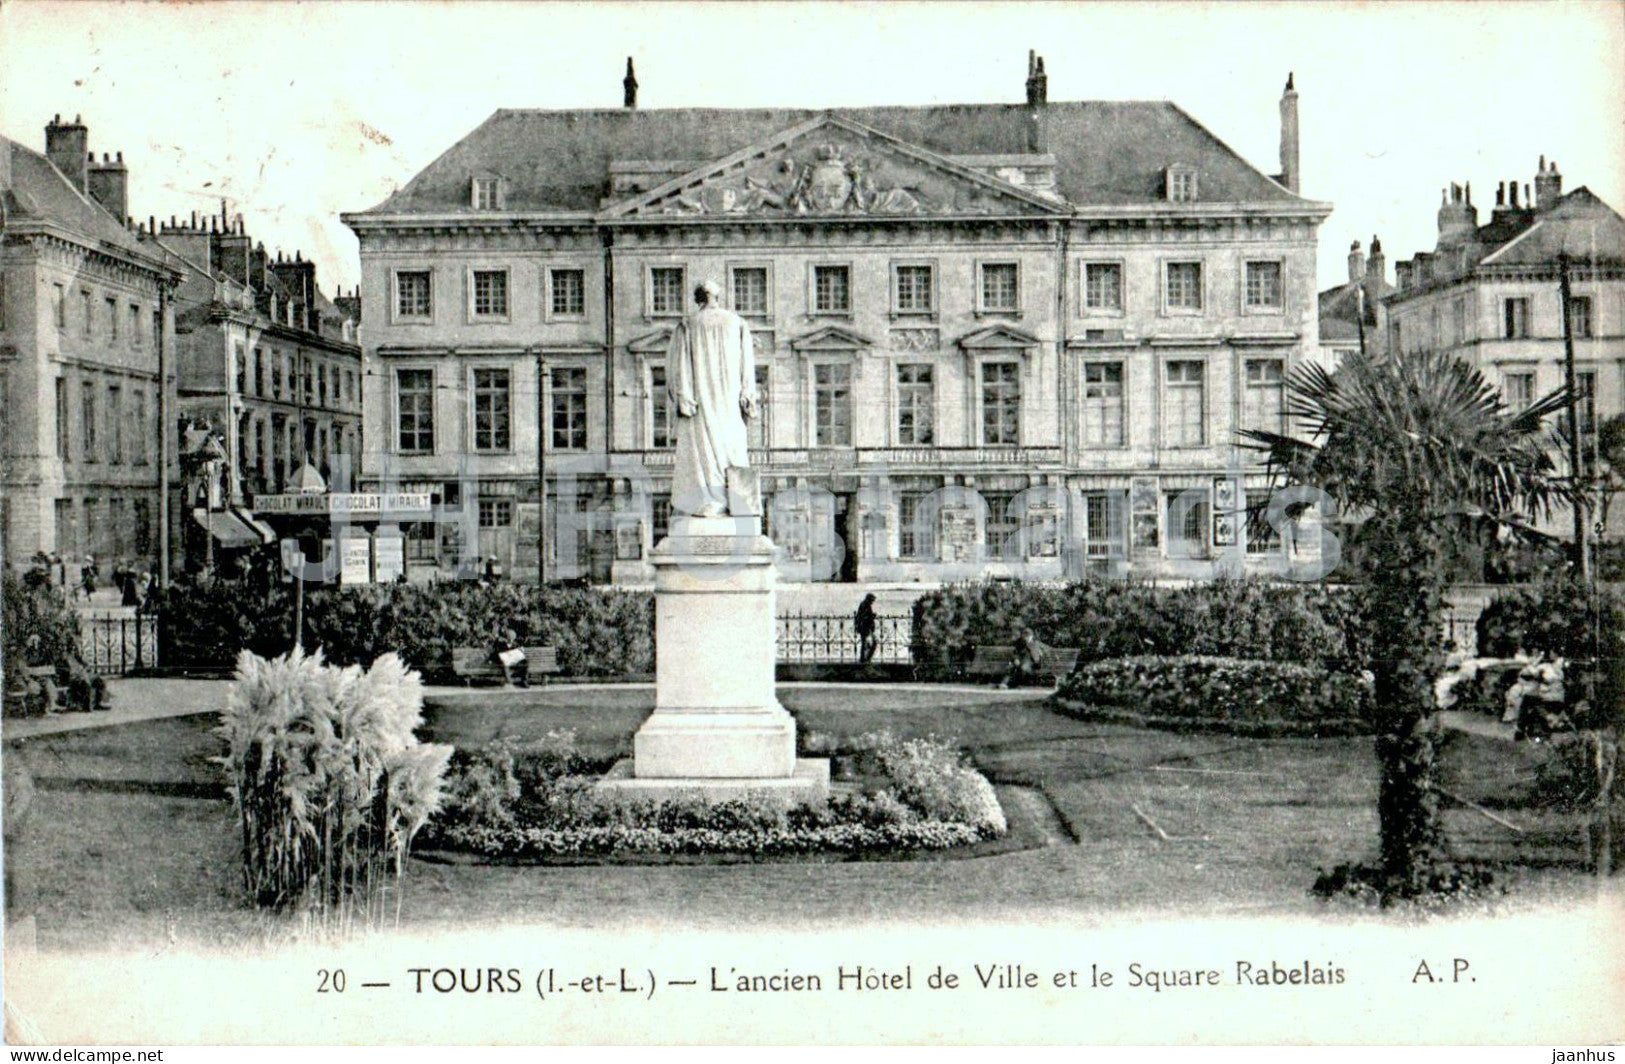 Tours - L'ancien Hotel de Ville et le Square Rabelais - old town hall - 20 - old postcard - France - used - JH Postcards